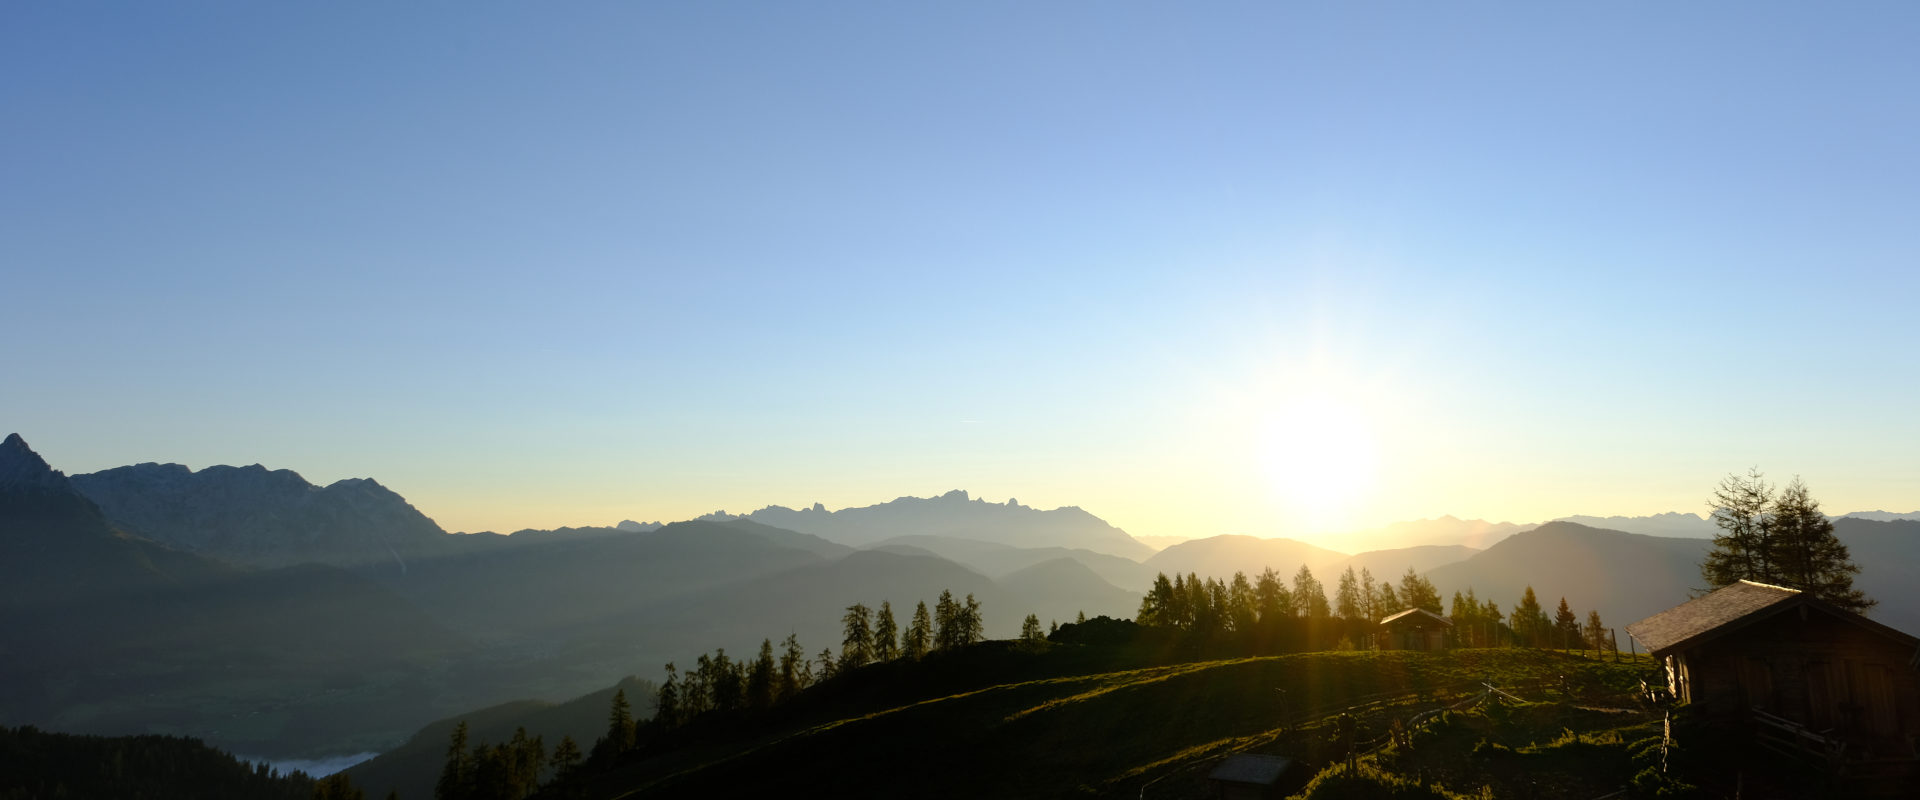 Sonnenaufgang bei einer Bergtour von Martin Pühringer.